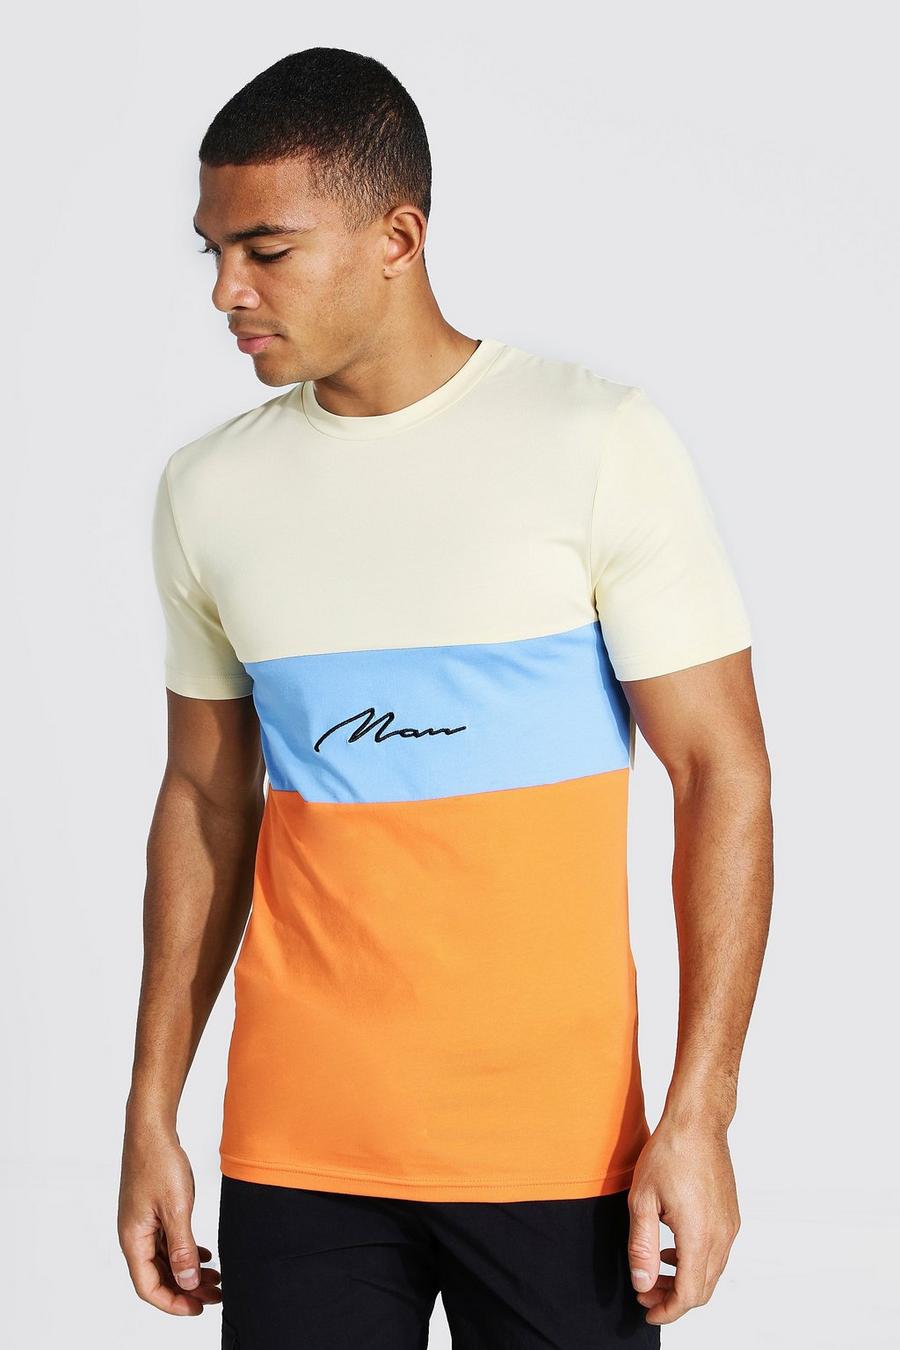 T-shirt sagomata a blocchi di colore con firma Man image number 1